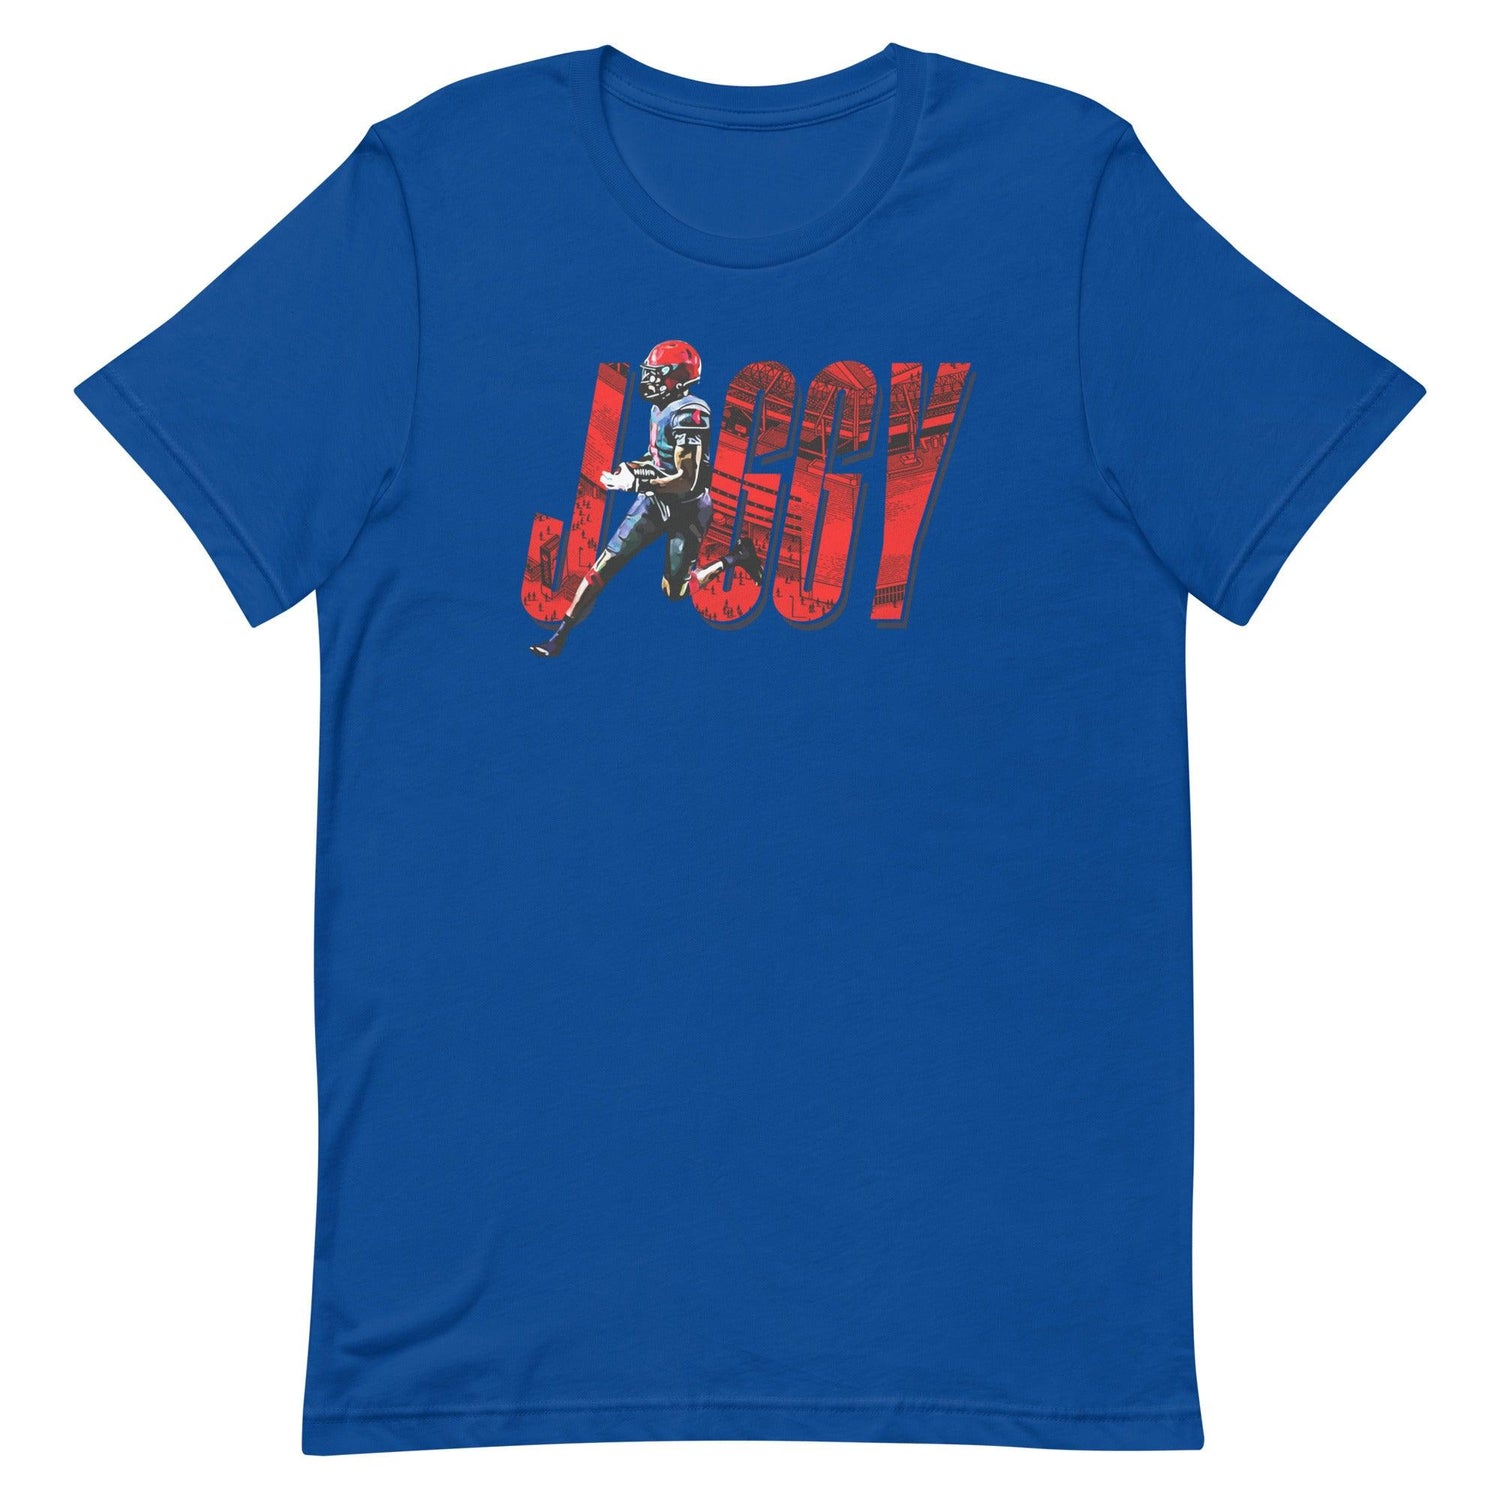 Cyrus Fagan "Jiggy" t-shirt - Fan Arch